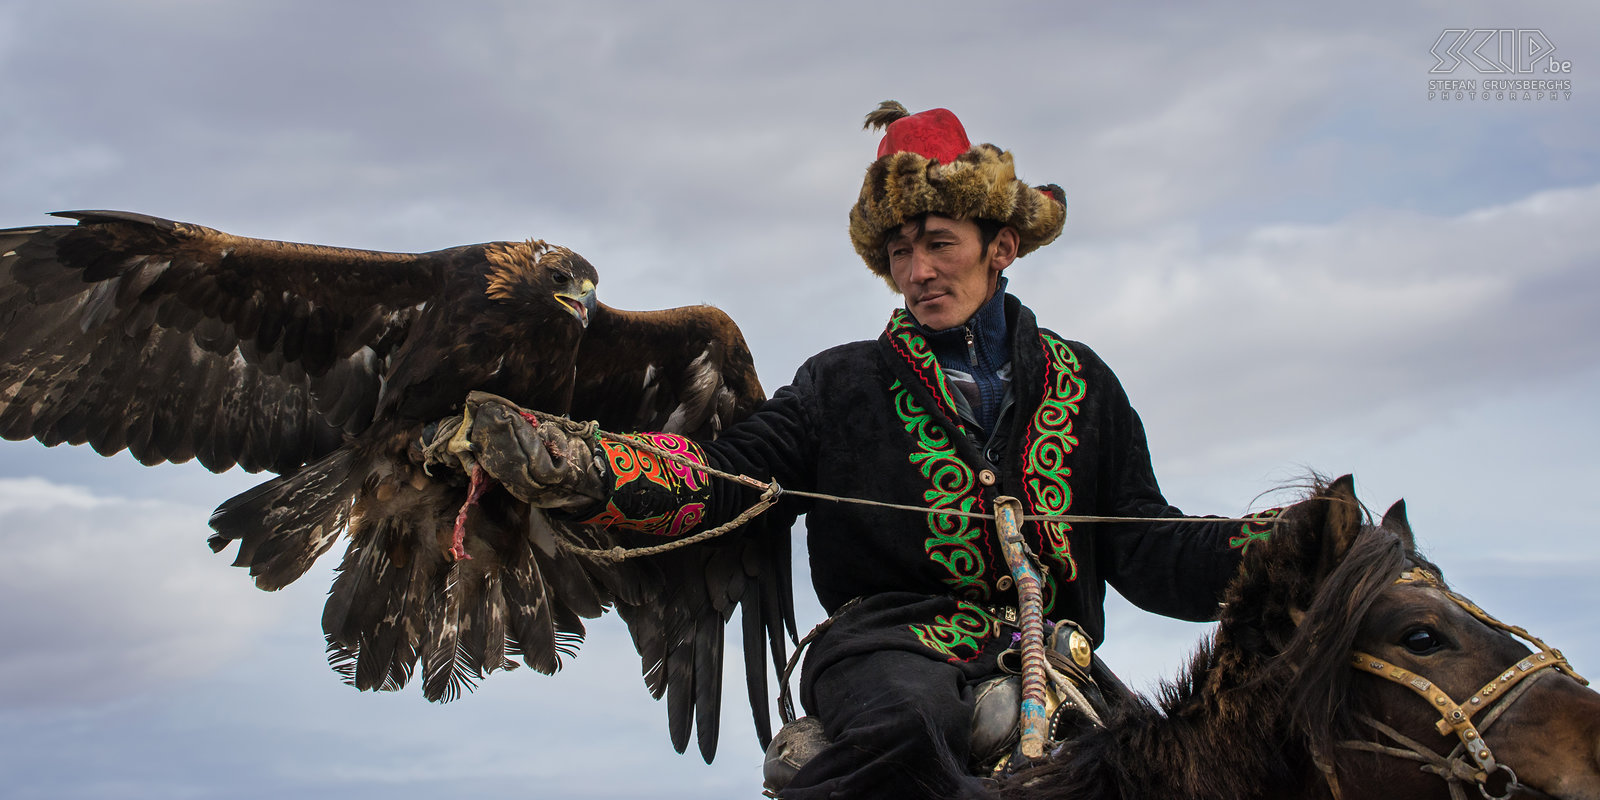 Ulgii - Golden Eagle Festival A Kazakh eagle hunter is called kusbegi/kushbegi/qusbegi or berkutchi.  Stefan Cruysberghs